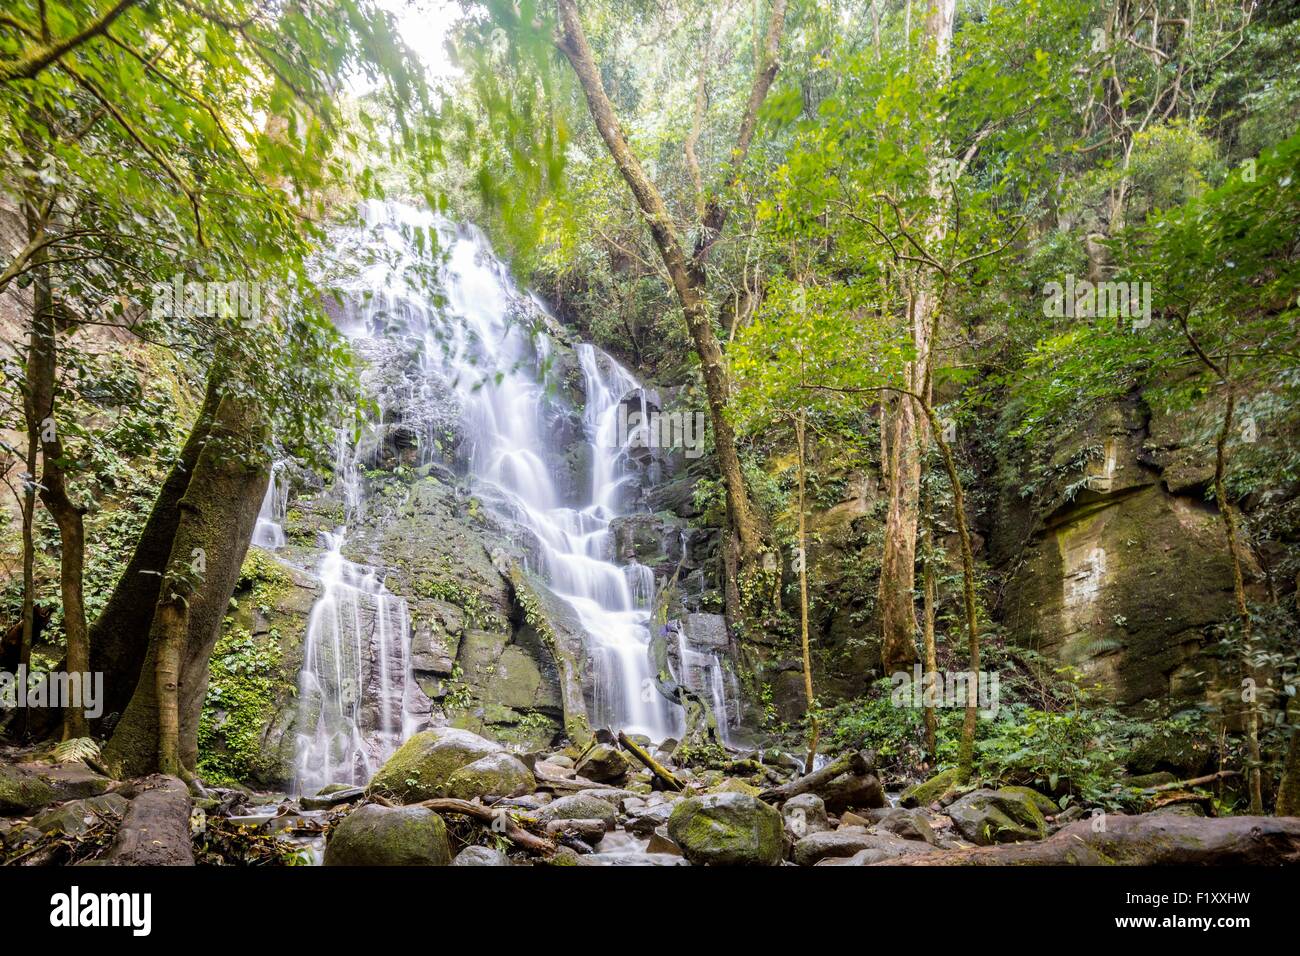 Costa Rica, Guanacaste province, Rincon de la Vieja National Park Stock Photo